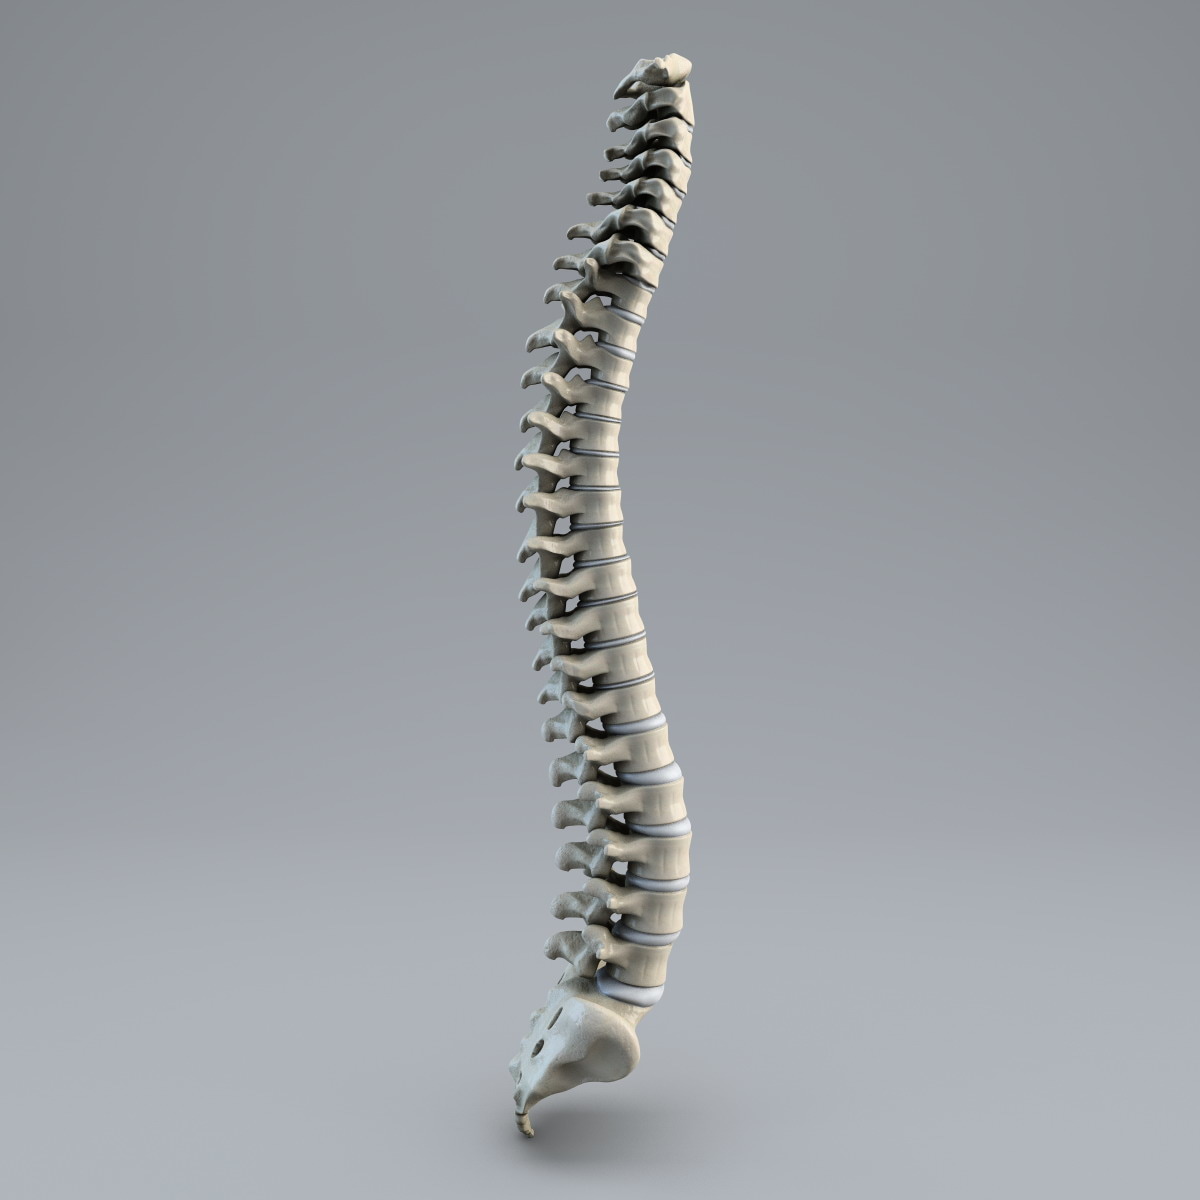 human spine 3d model